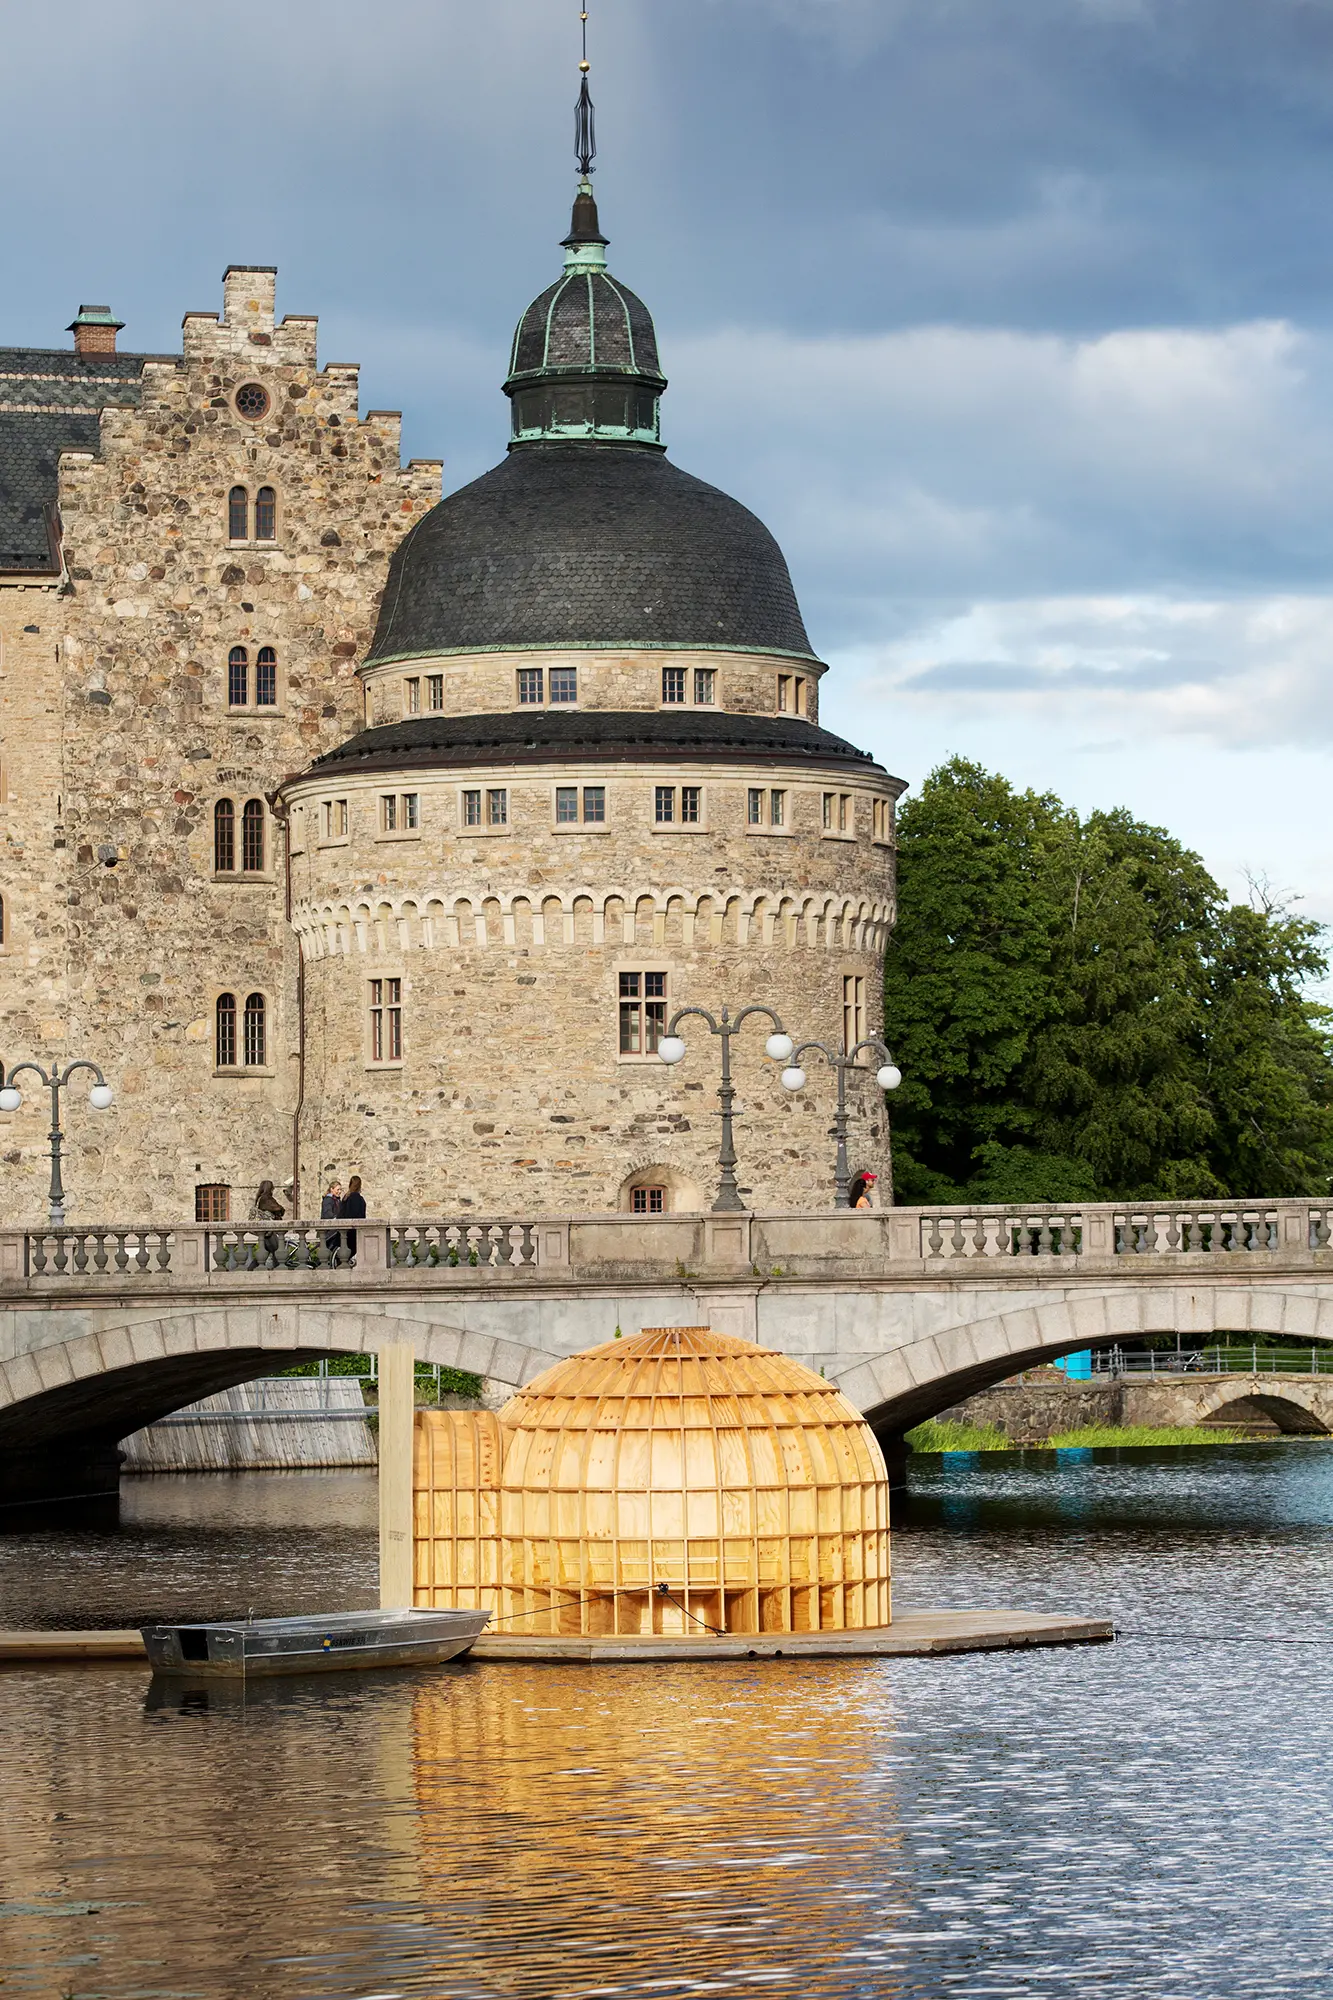 På en plattform i vattnet framför Örebro slott syns en stor träskulptur i plywood som är kupolformad. Skulpturen har en ingång på ena sidan och framför den ligger en roddbåt förtöjd.